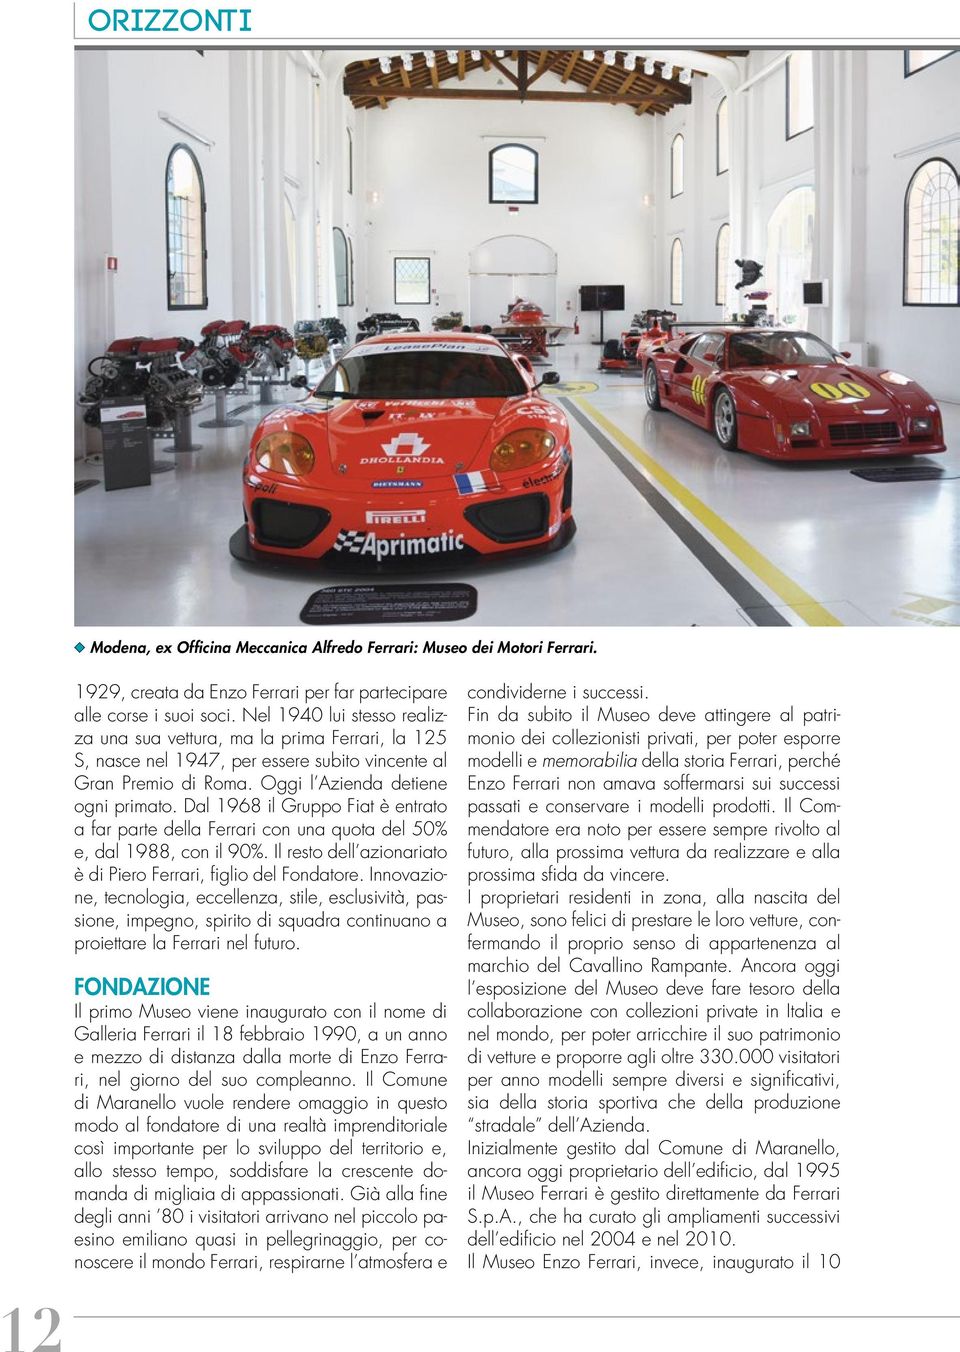 Dal 1968 il Gruppo Fiat è entrato a far parte della Ferrari con una quota del 50% e, dal 1988, con il 90%. Il resto dell azionariato è di Piero Ferrari, figlio del Fondatore.